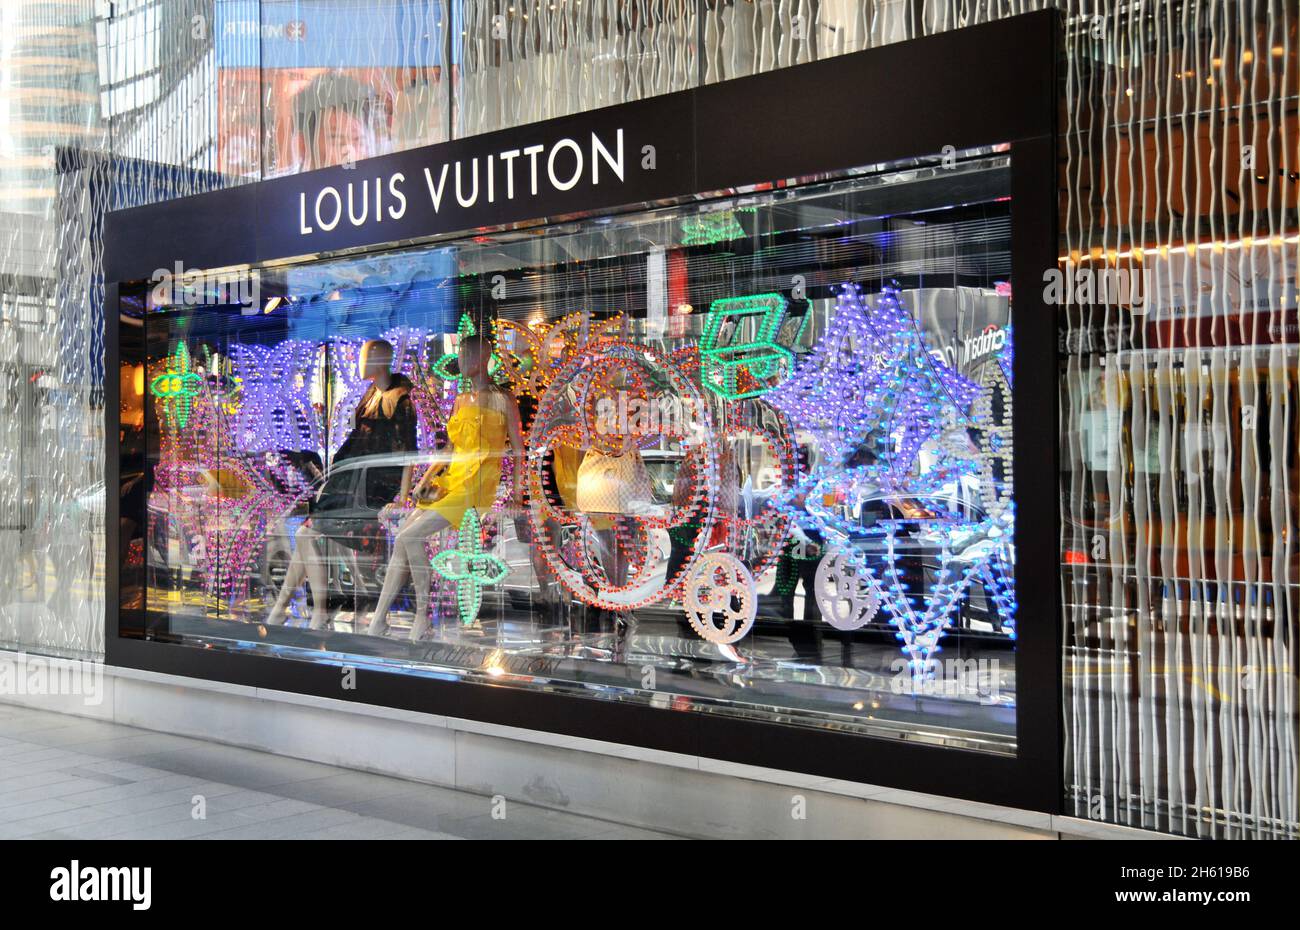 Vitrine de Noel du magasin Louis Vuitton dans le quartier des affaires et des finances de l'île de Hong Kong, Chine Banque D'Images